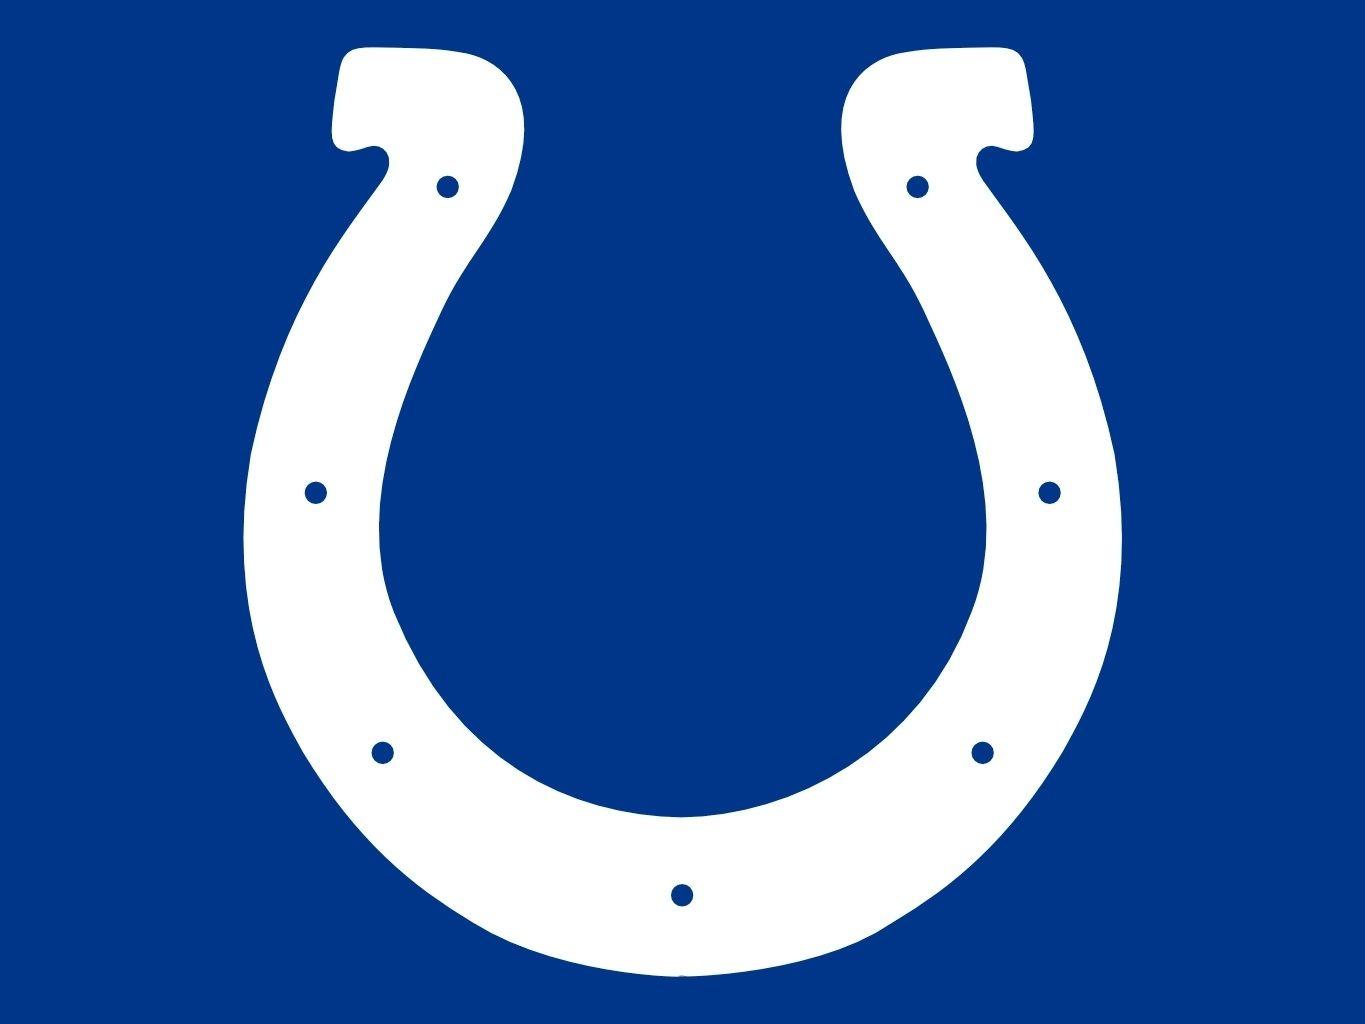 Indianapolis Colts Logo ) wallpaper